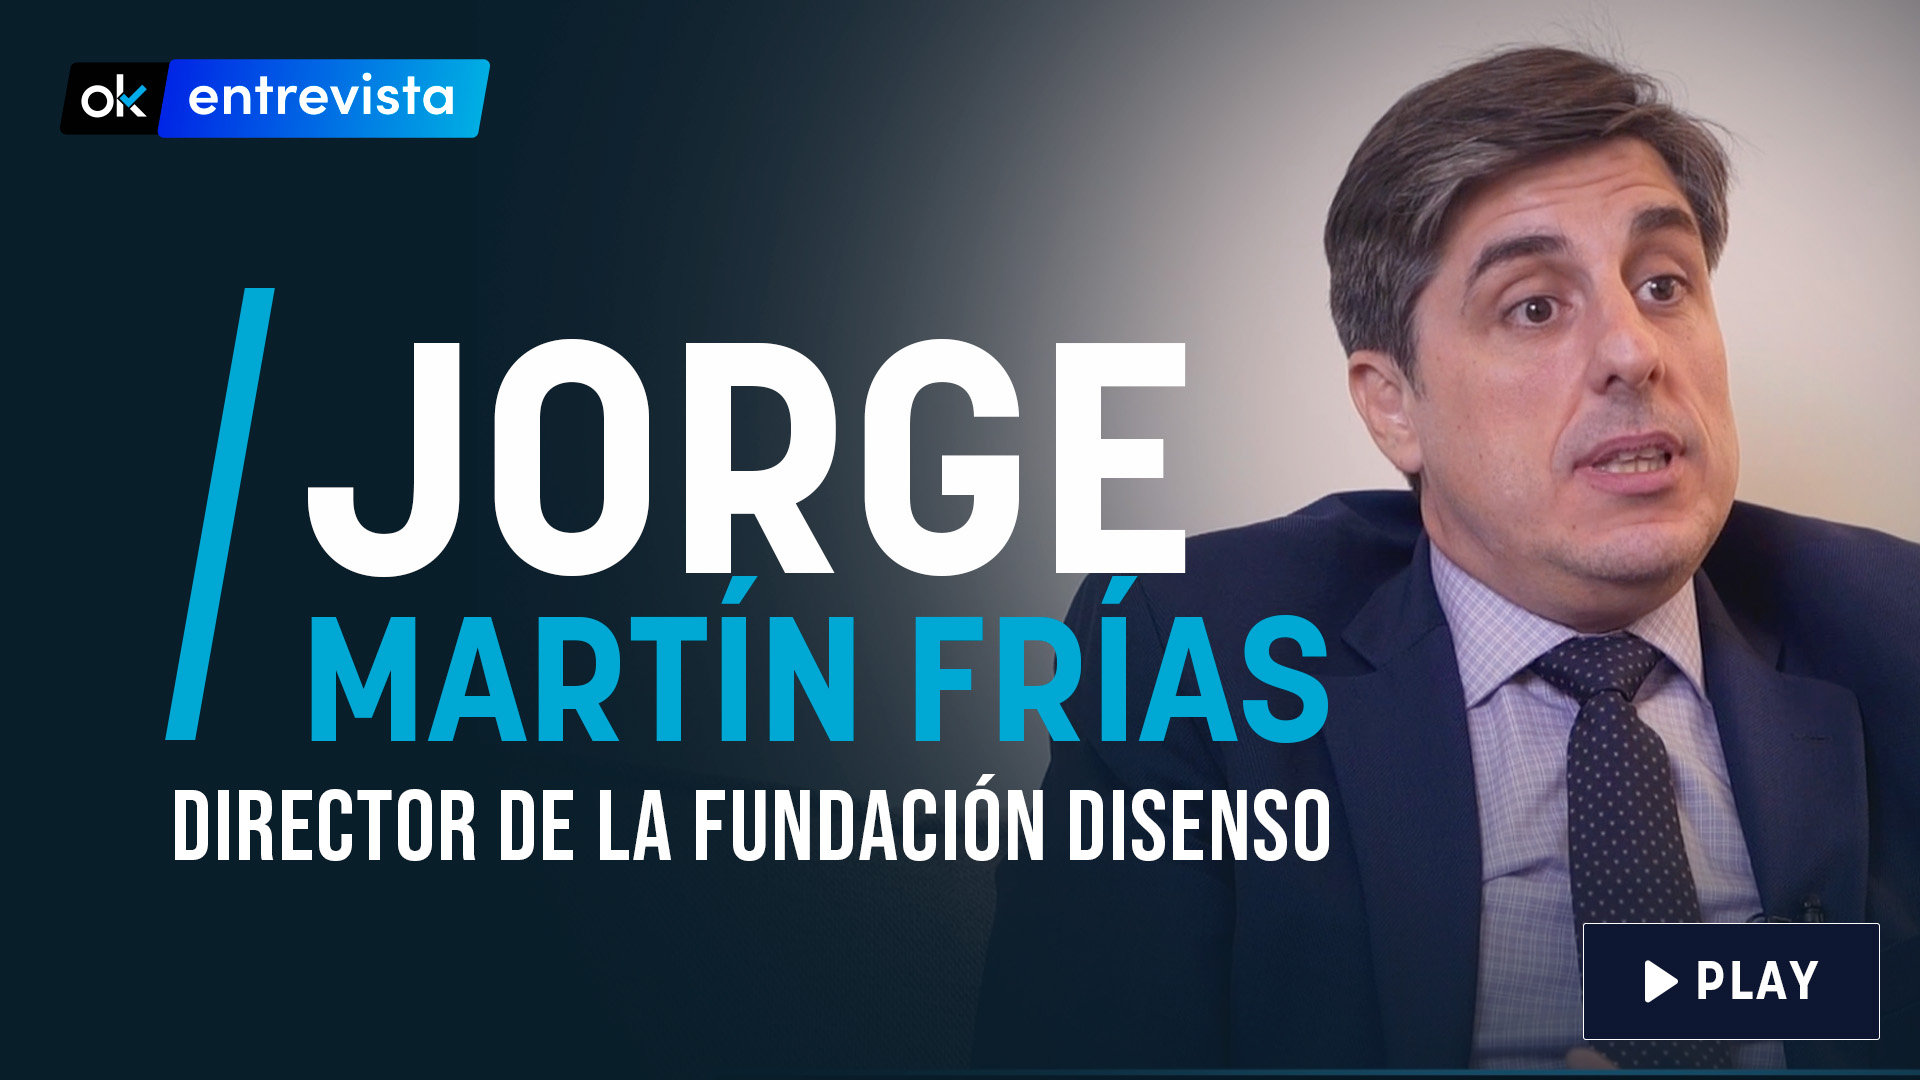 Jorge Martín Frías, director de la Fundación Disenso